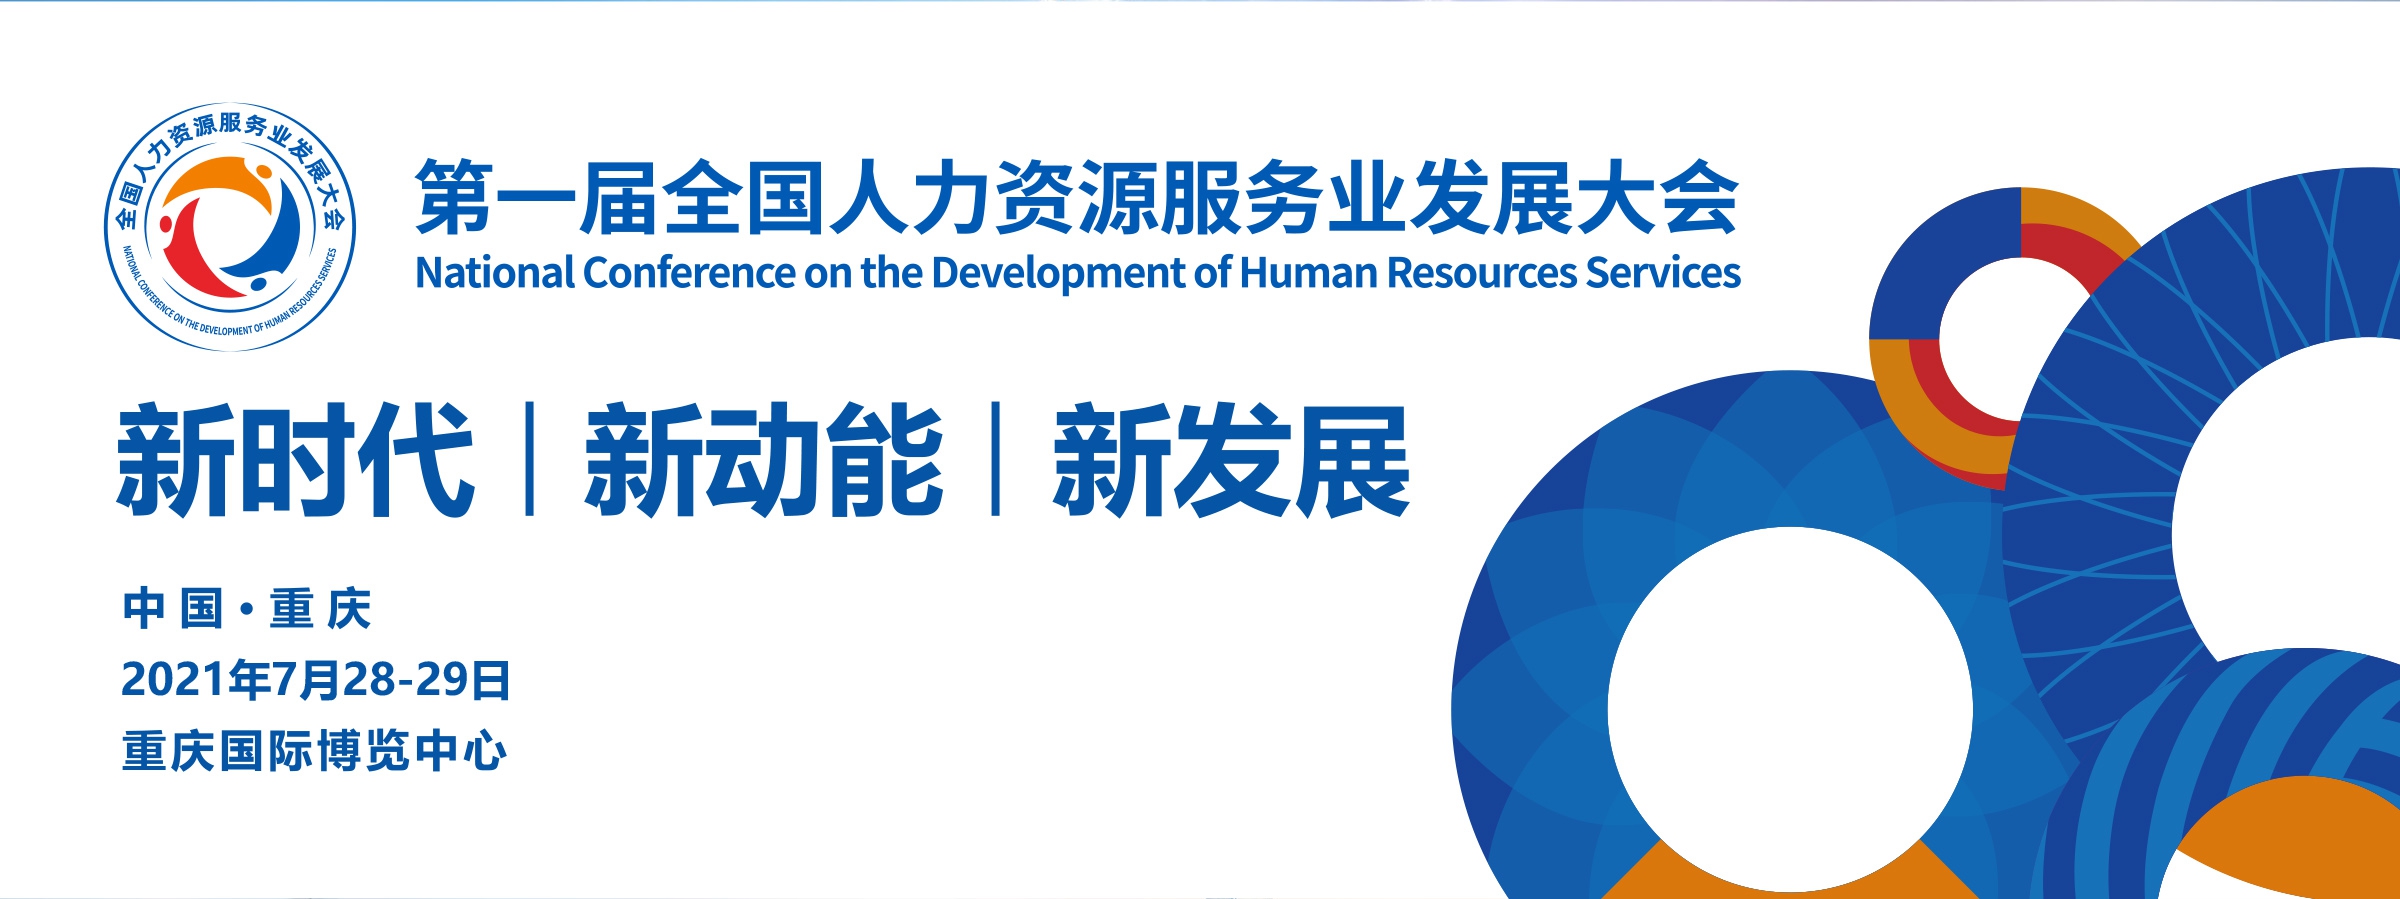 丽水代表团亮相第一届全国人力资源服务业发展大会！